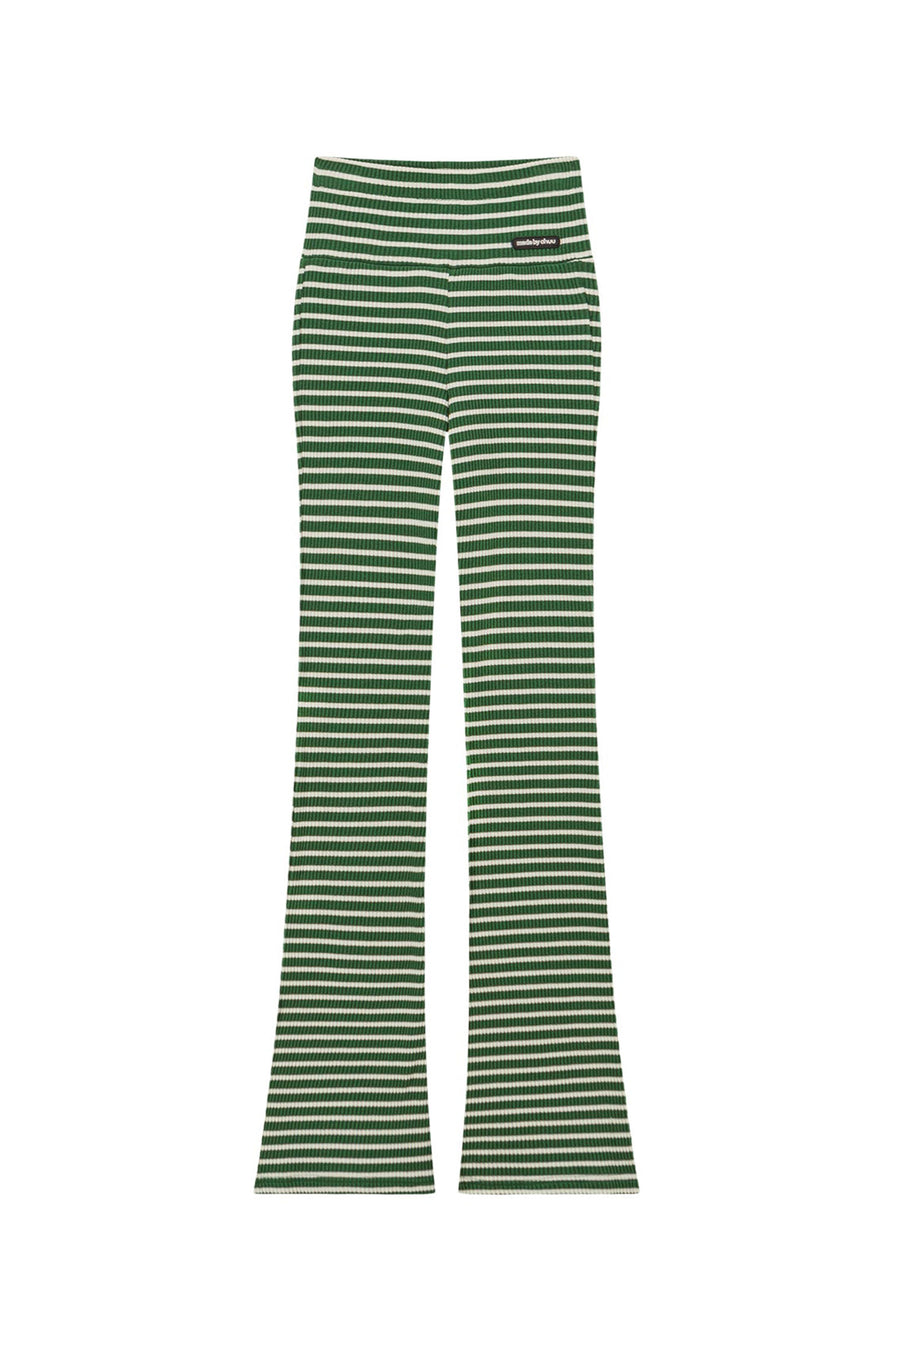 CHUU Striped Pants